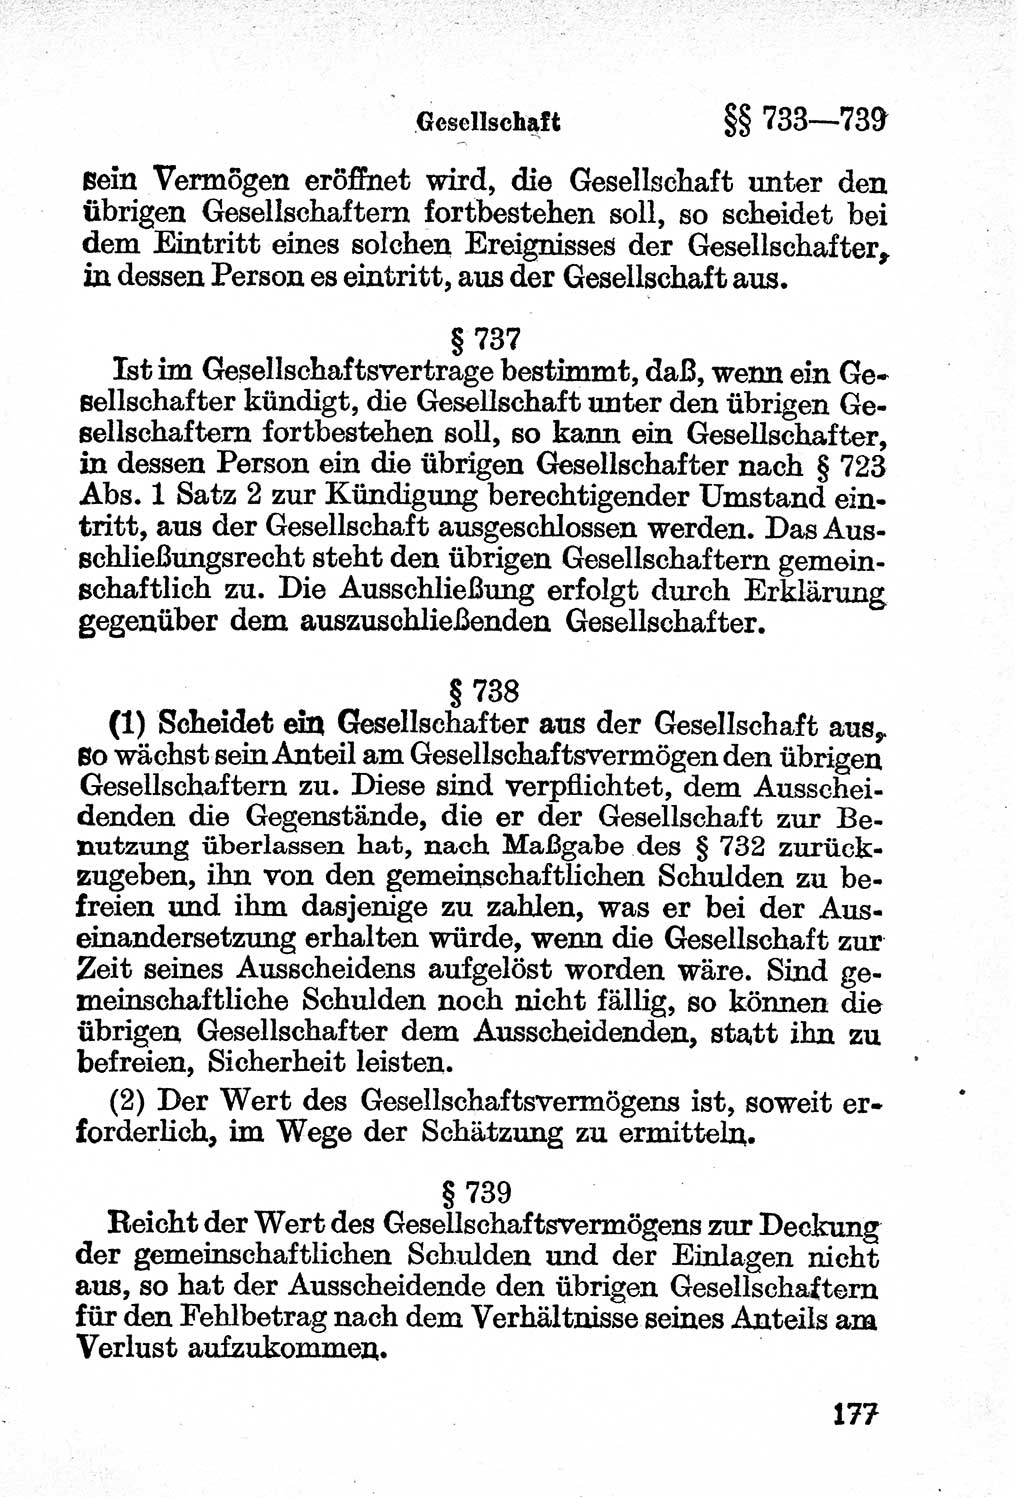 Bürgerliches Gesetzbuch (BGB) nebst wichtigen Nebengesetzen [Deutsche Demokratische Republik (DDR)] 1956, Seite 177 (BGB Nebenges. DDR 1956, S. 177)